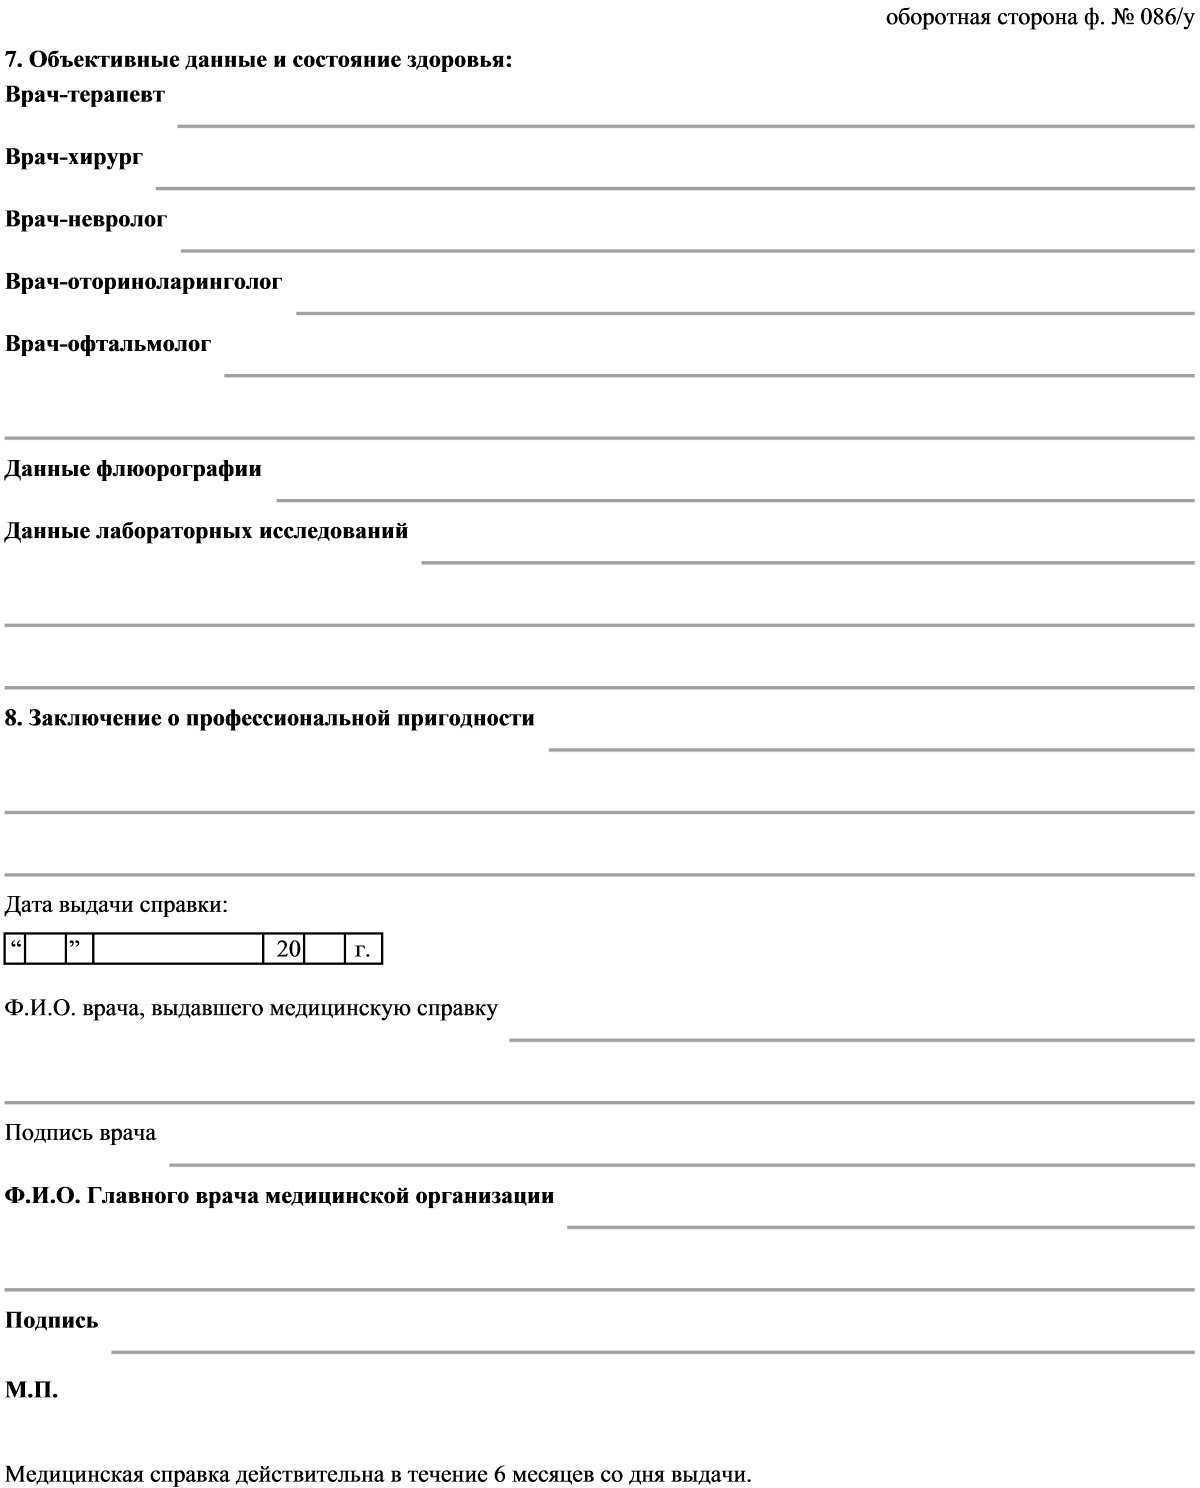 Особенности прохождения экзамена на носителя русского языка: какие вопросы задают, каковы темы тестов и критерии оценки?